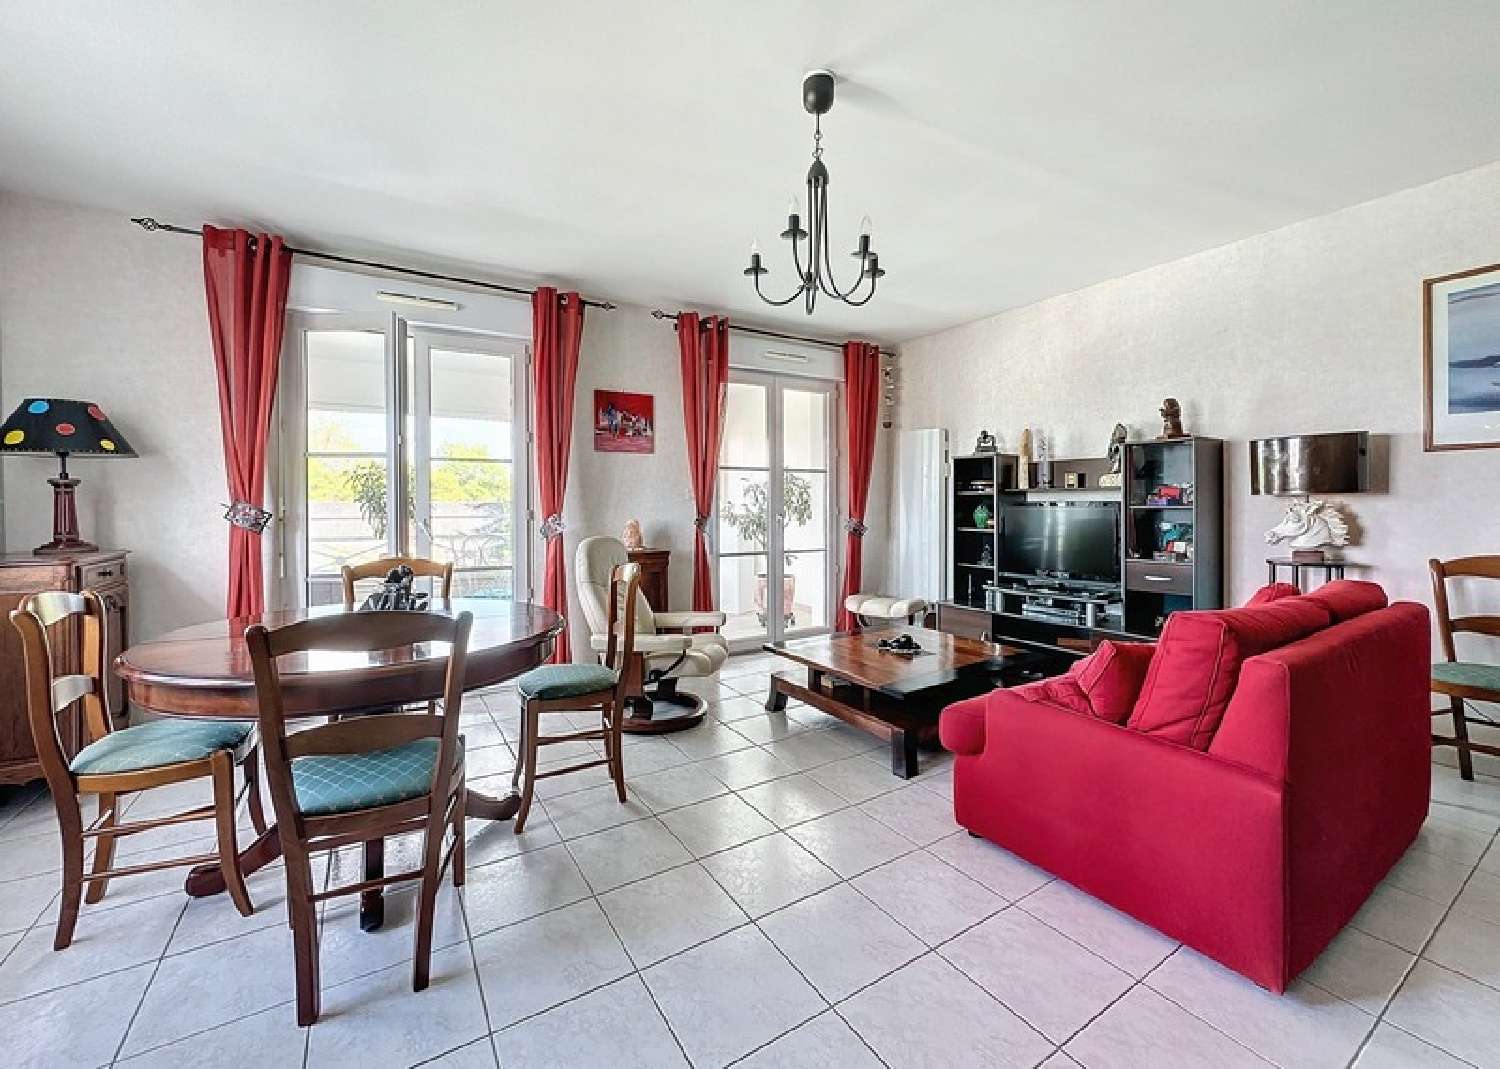  à vendre appartement Chambray-lès-Tours Indre-et-Loire 3